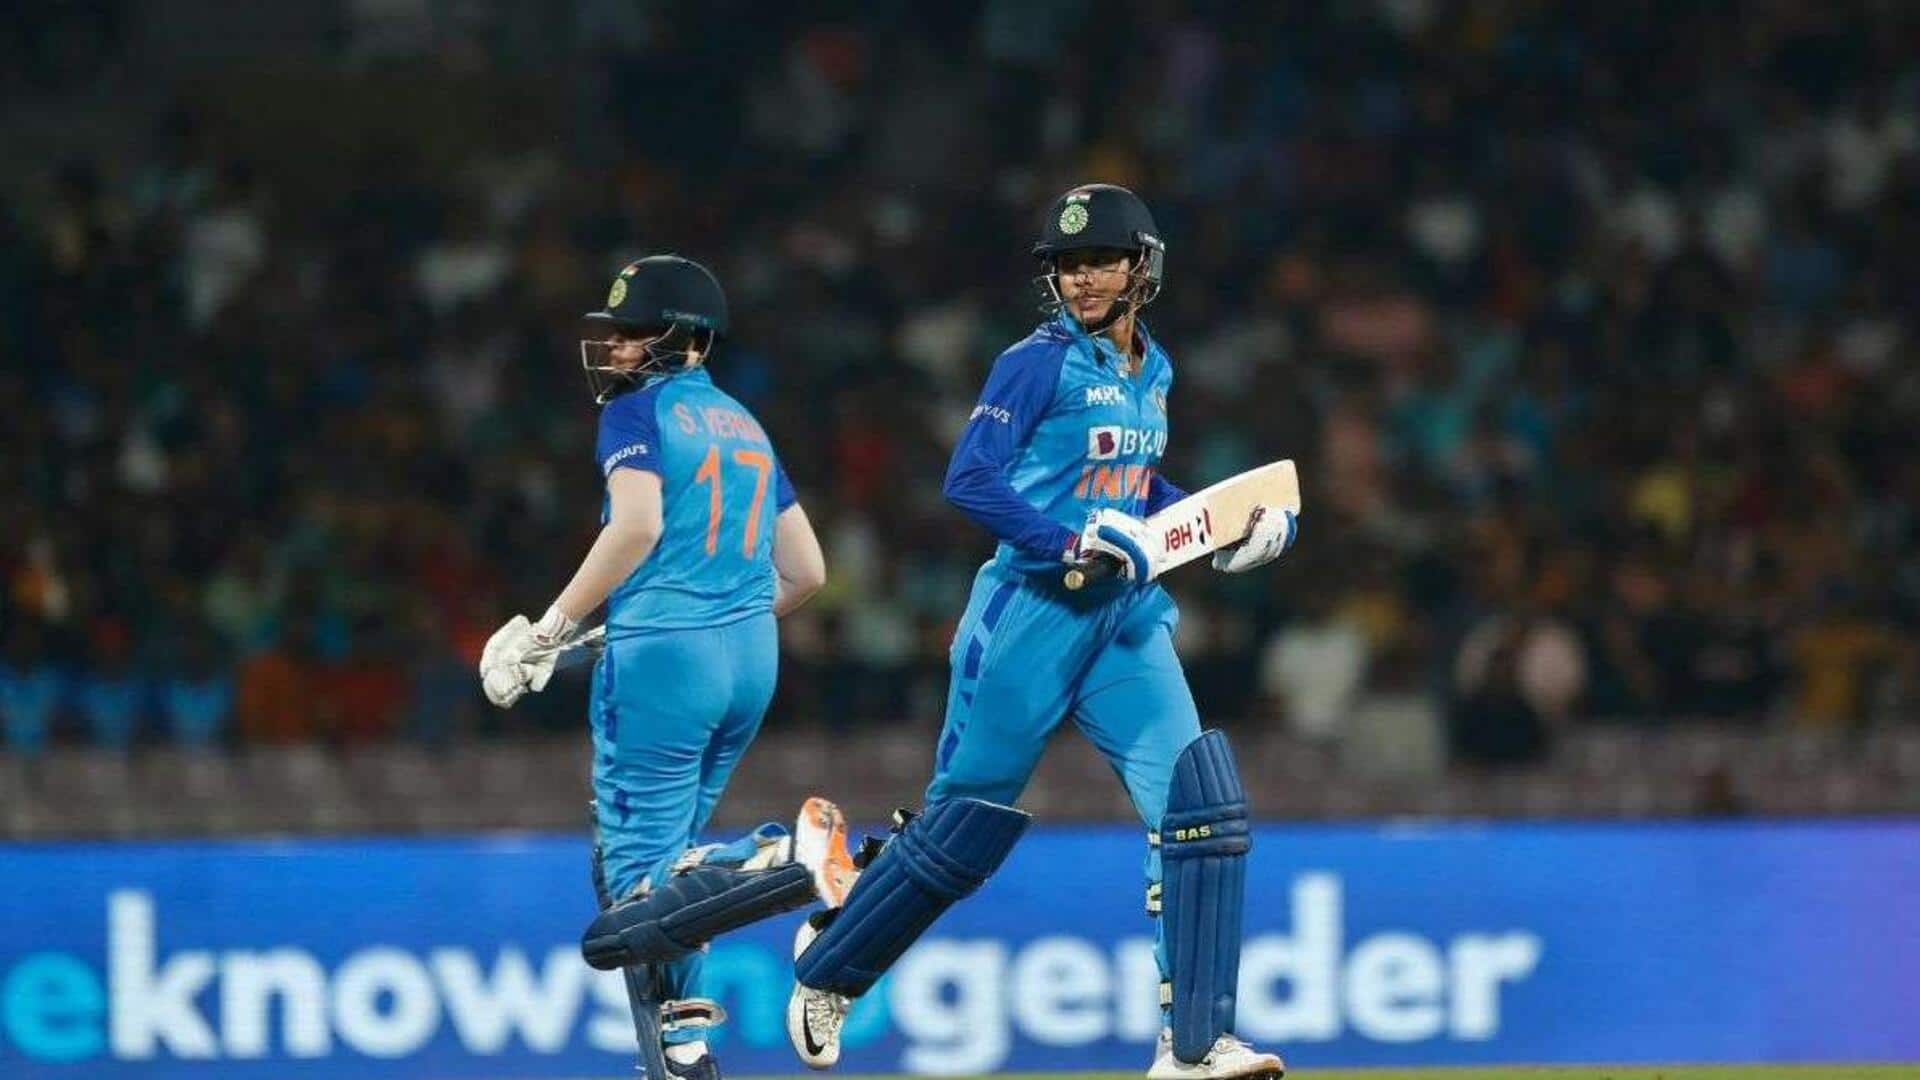 இந்தியா vs ஆஸ்திரேலியா மகளிர் 2வது ODI : மீண்டும் அணியில் சேர்ந்த ஸ்மிருதி மந்தனா